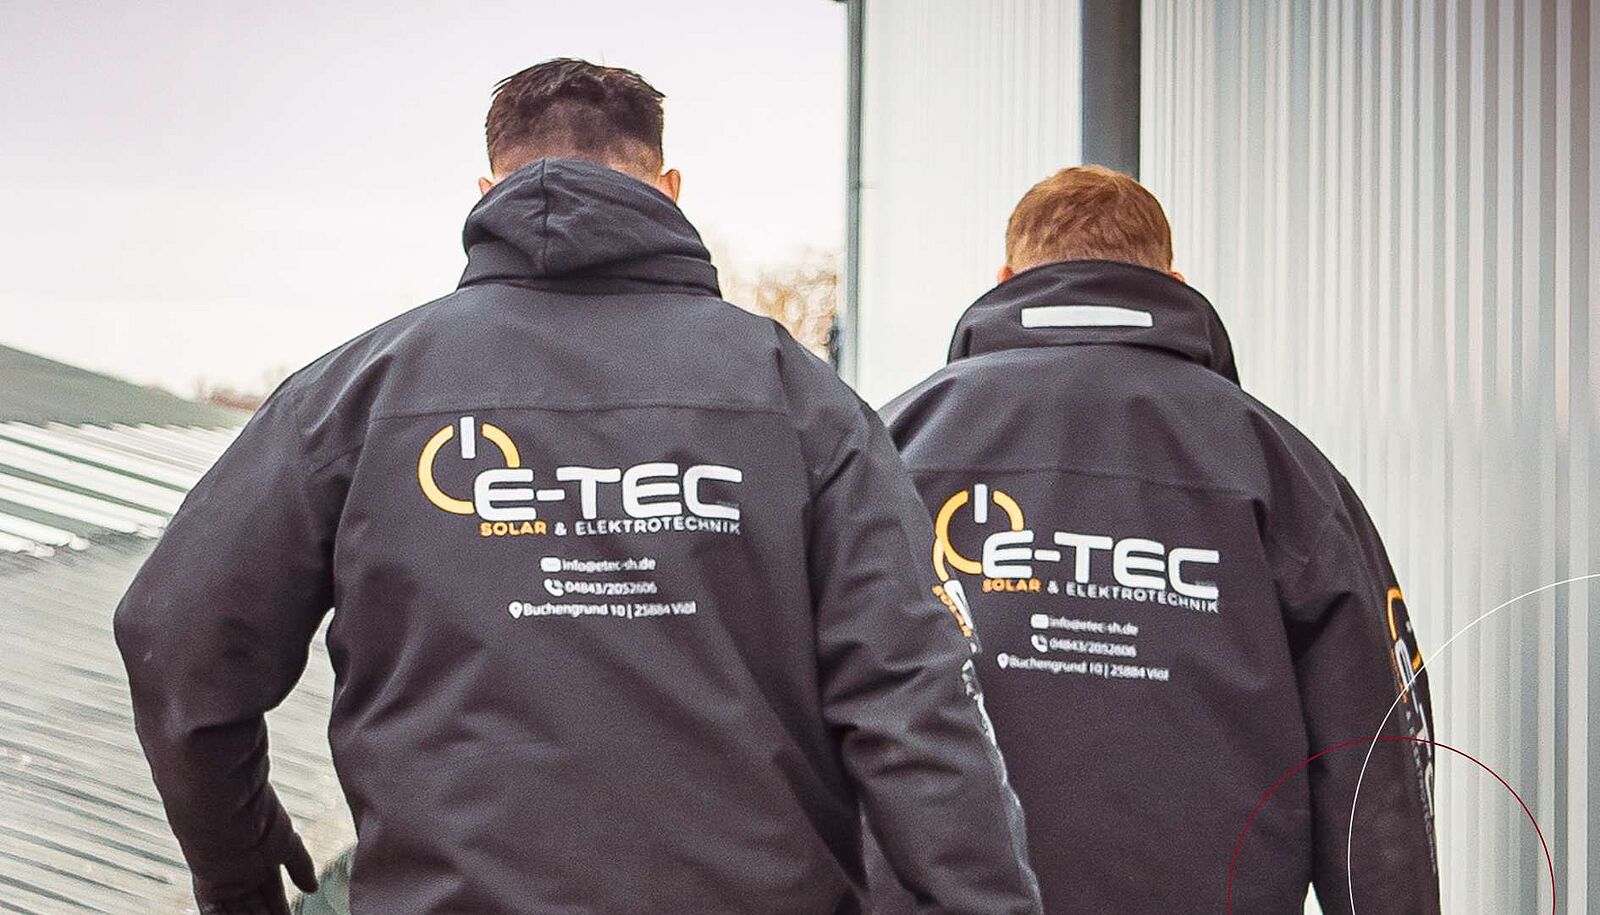 Zwei Männer tragen Arbeitskleidung mit dem Logo von E-Tec – Solar- & Elektrotechnik